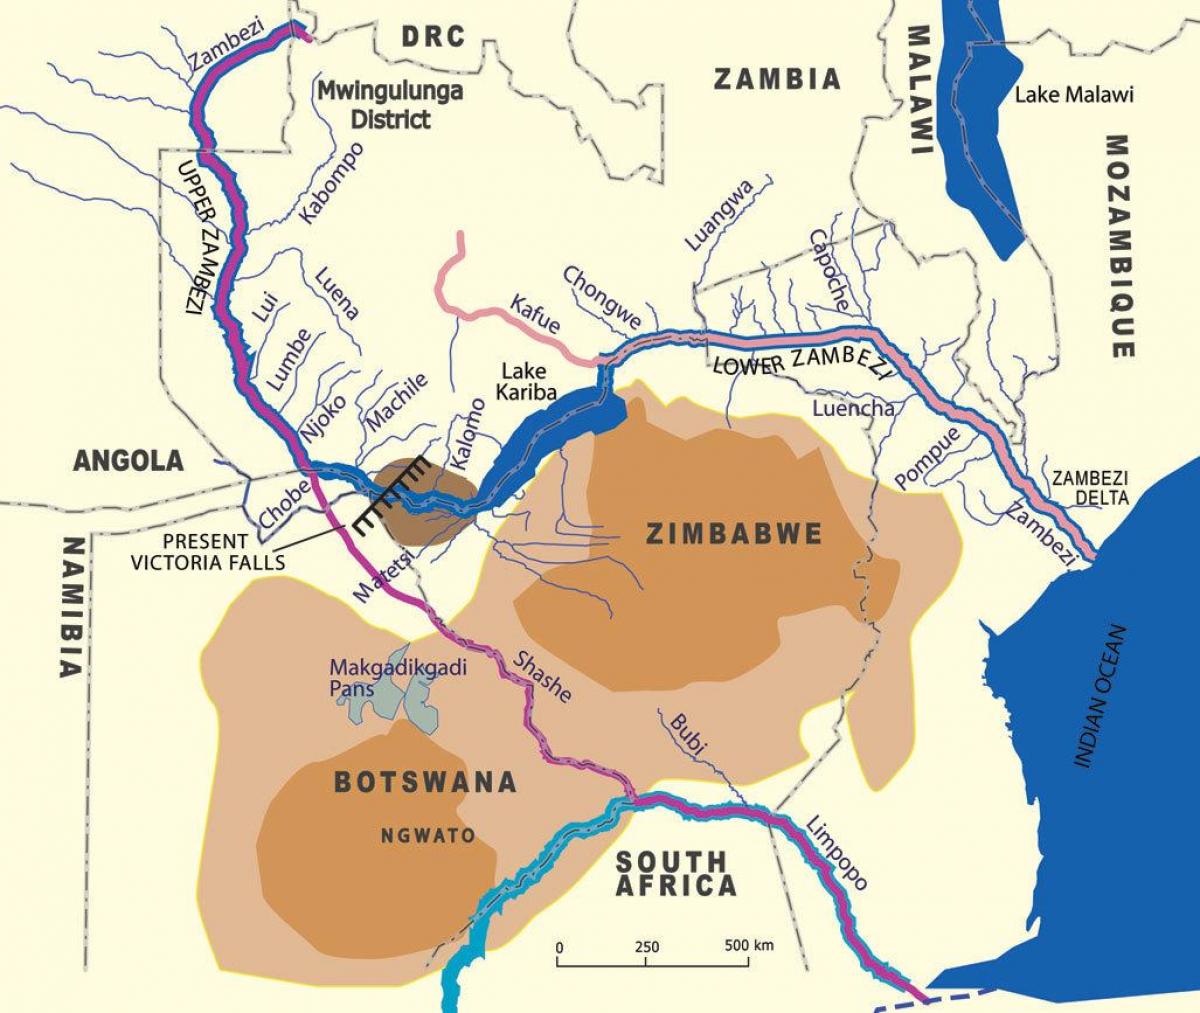 Χάρτης γεωλογικών ecu υπέρ της ζάμπια